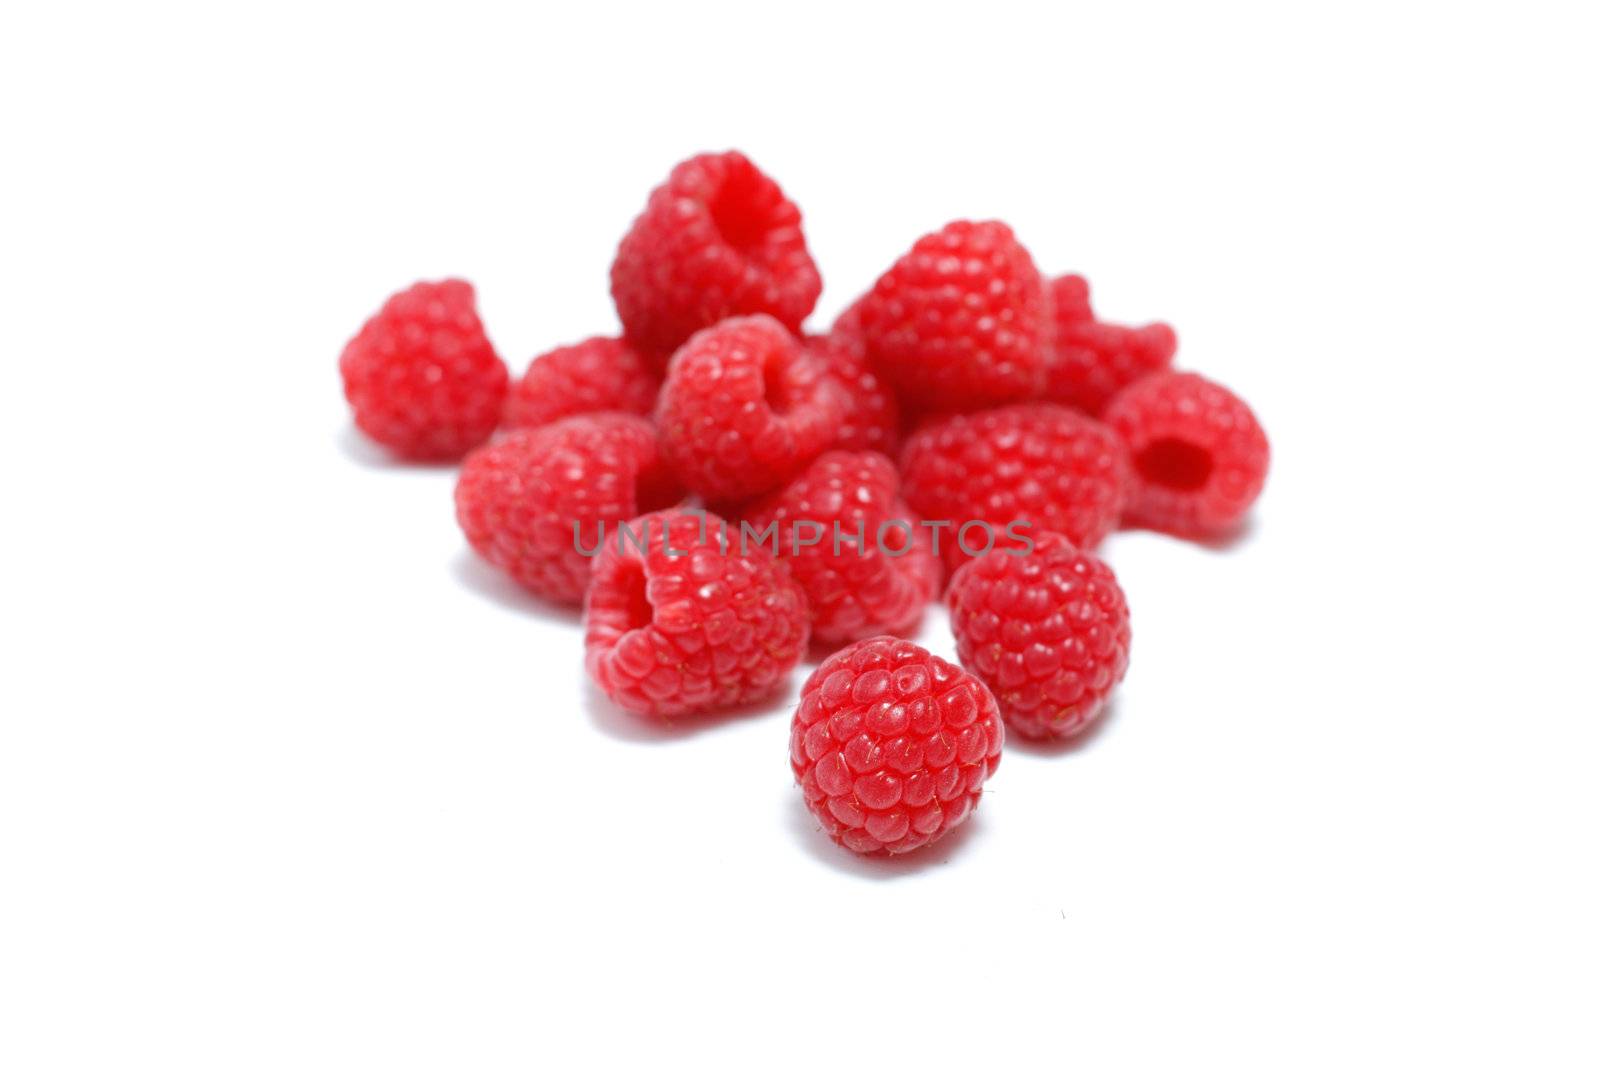 Delicious raspberries by leeser